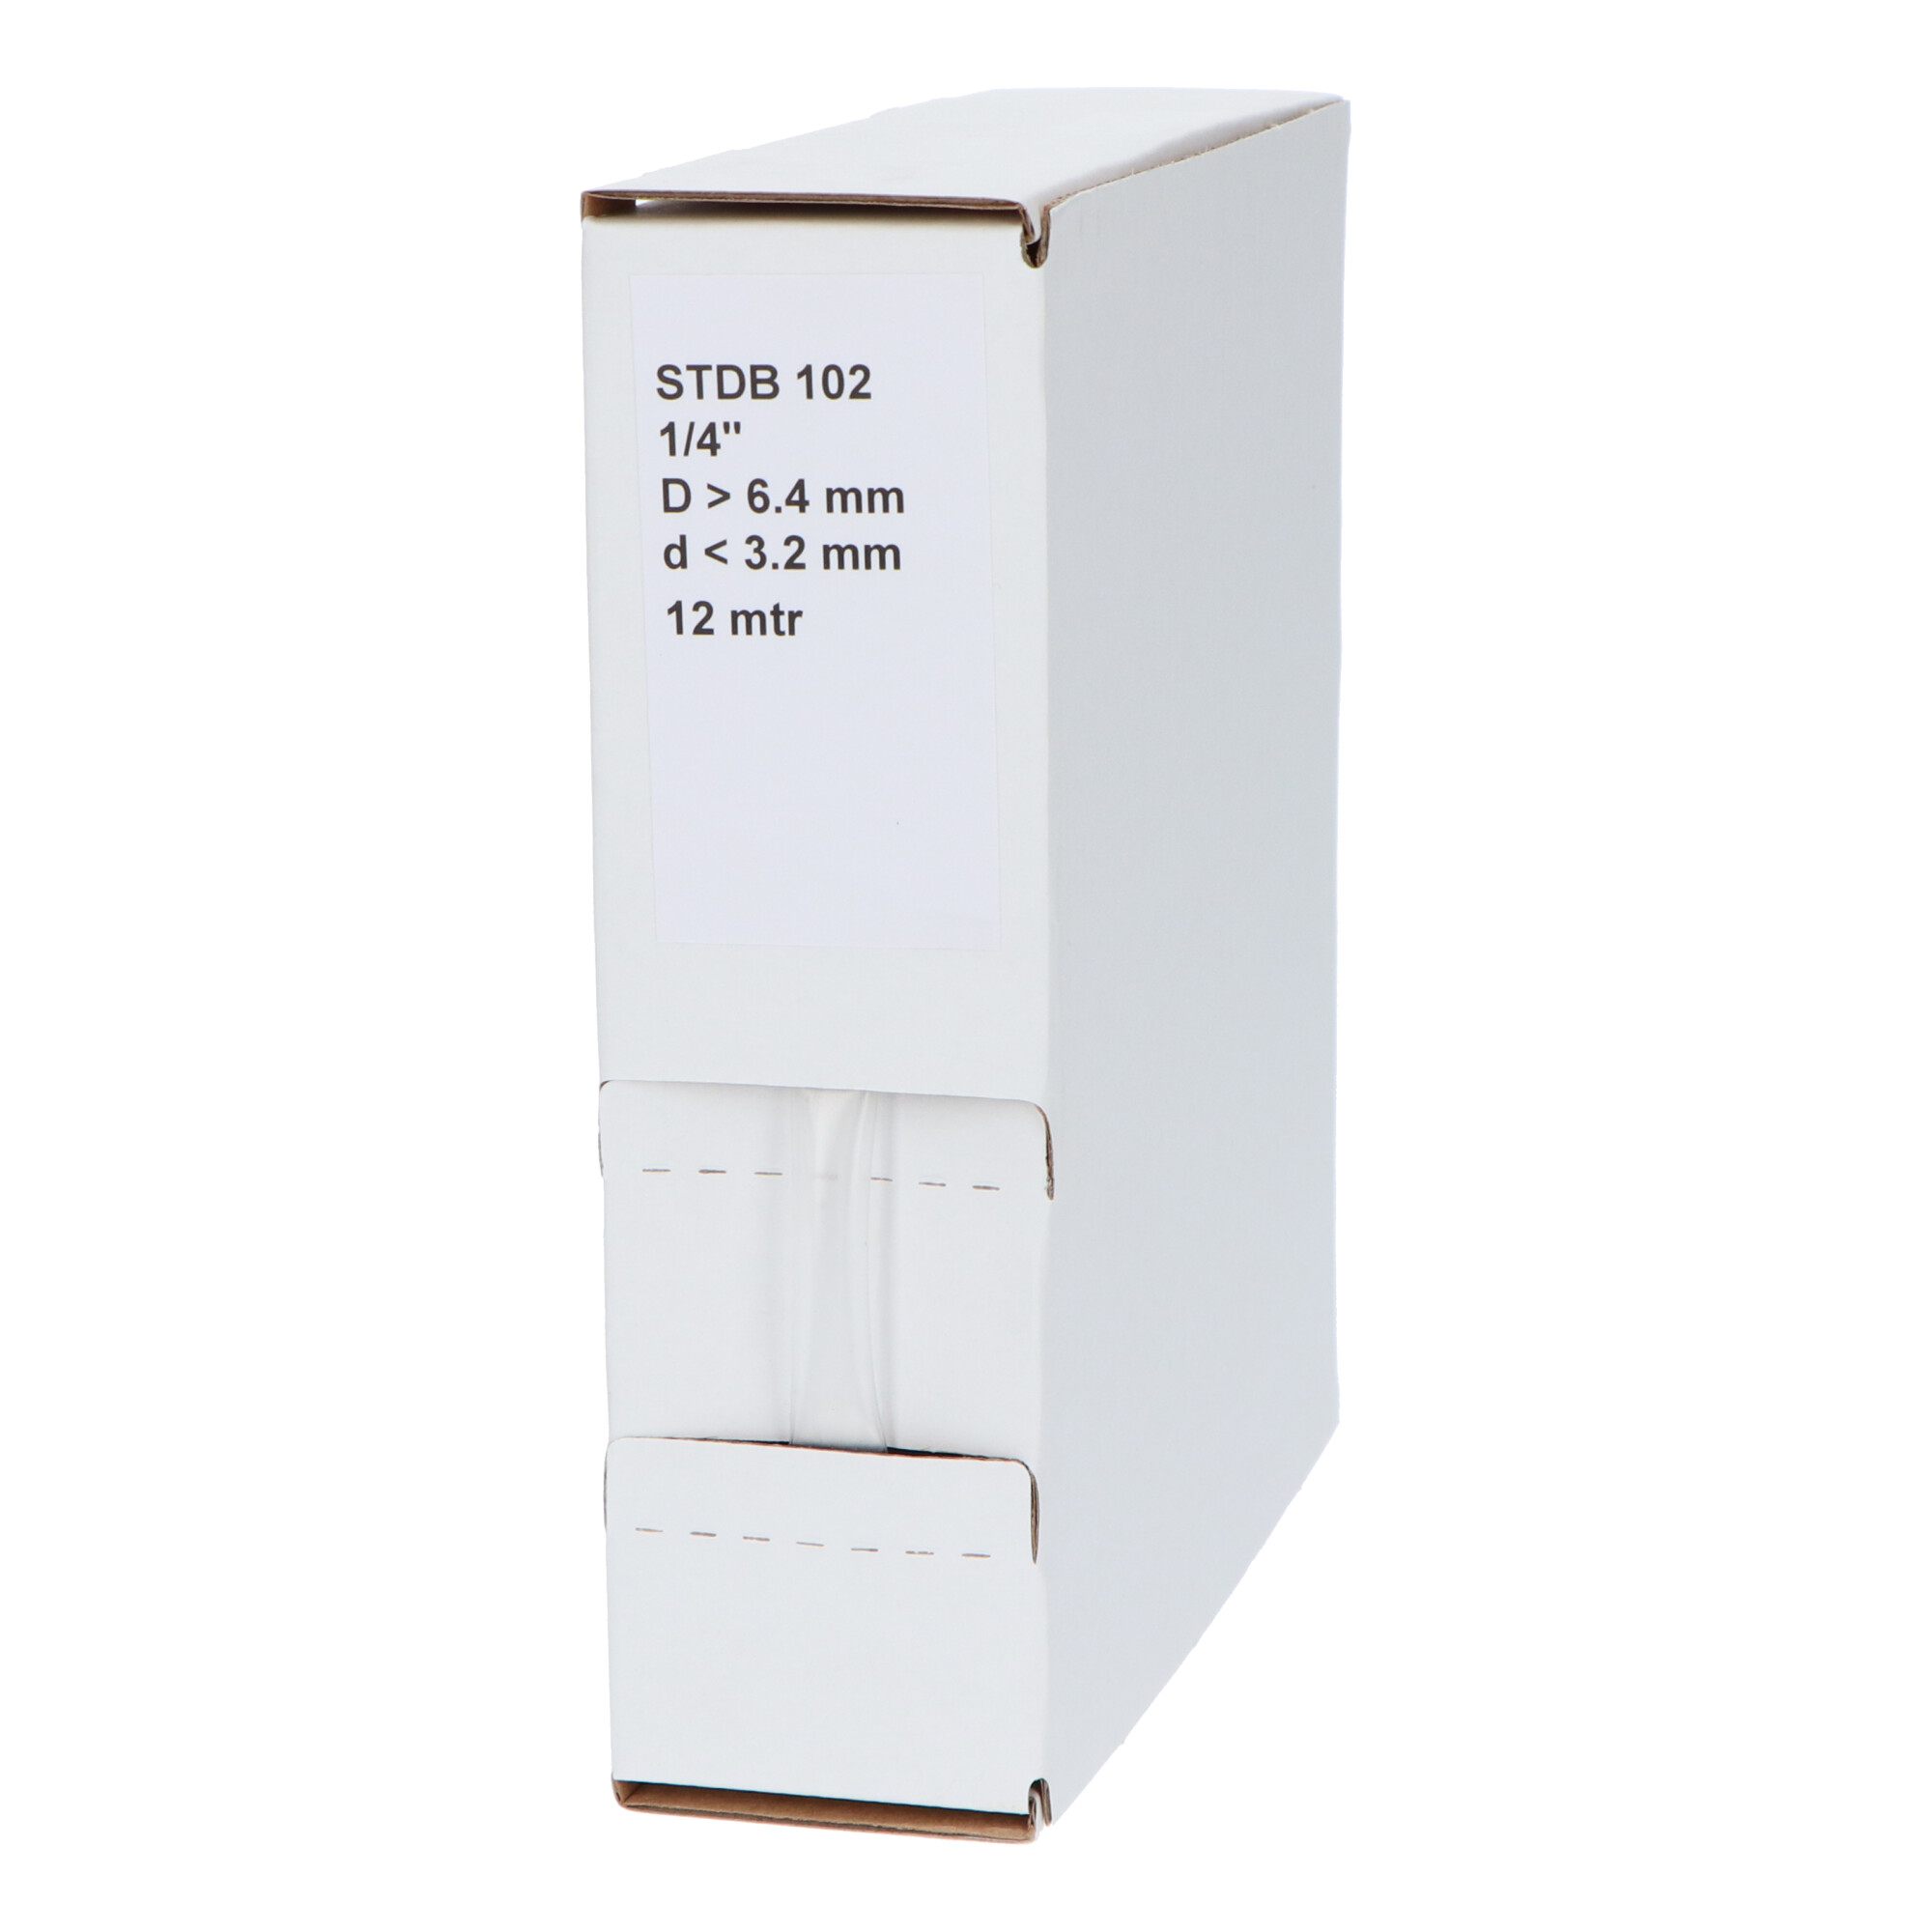 29-22004810G STDB 102 Krimpkous STDB 102 | 2:1 in dispenser box